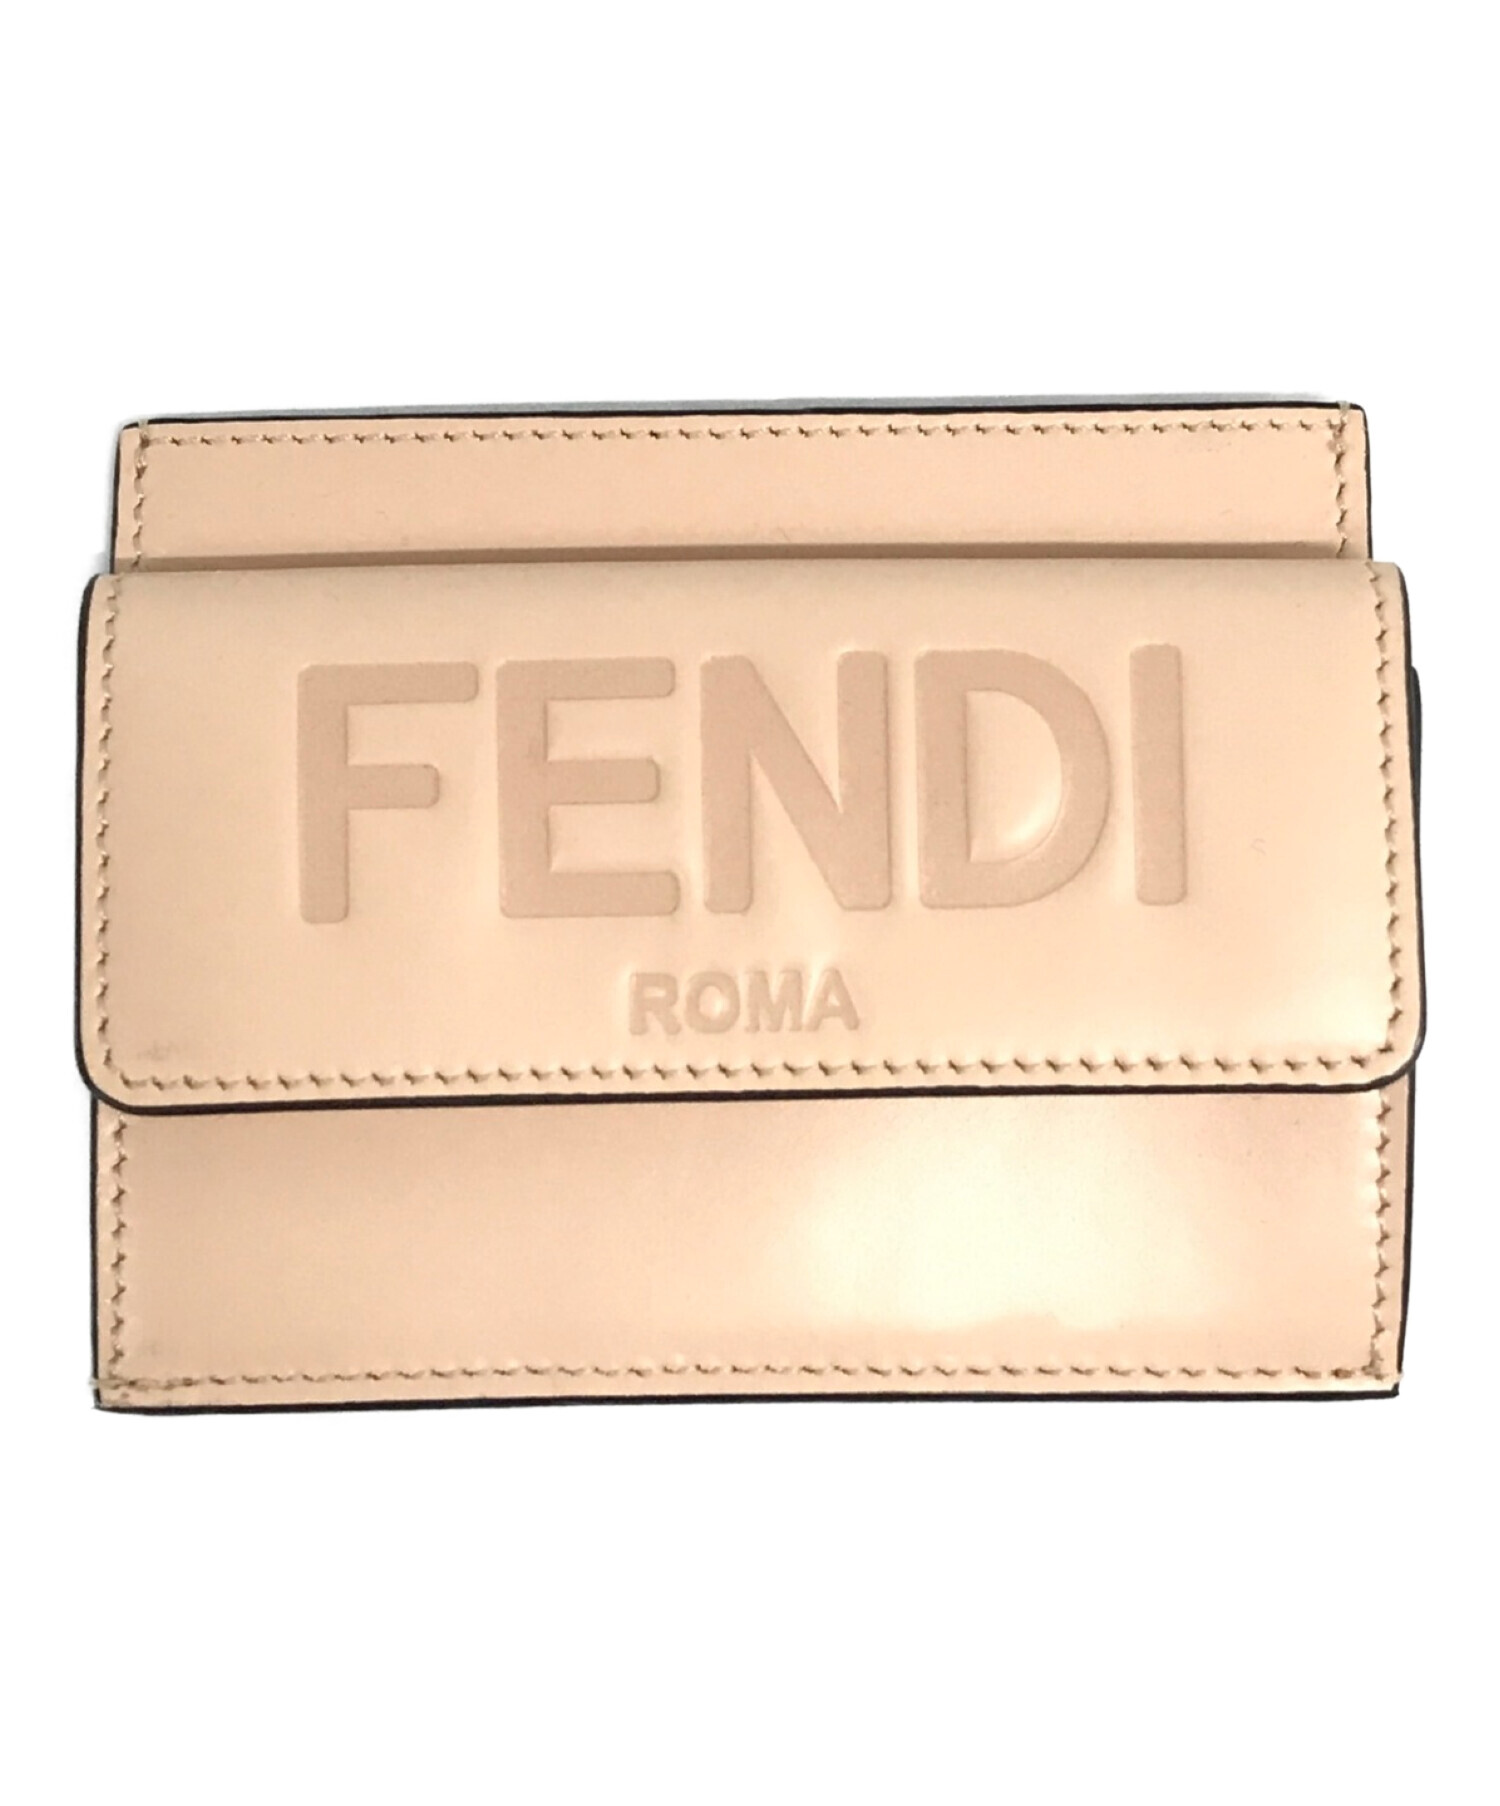 FENDI (フェンディ) ROMAカードケース ベージュ